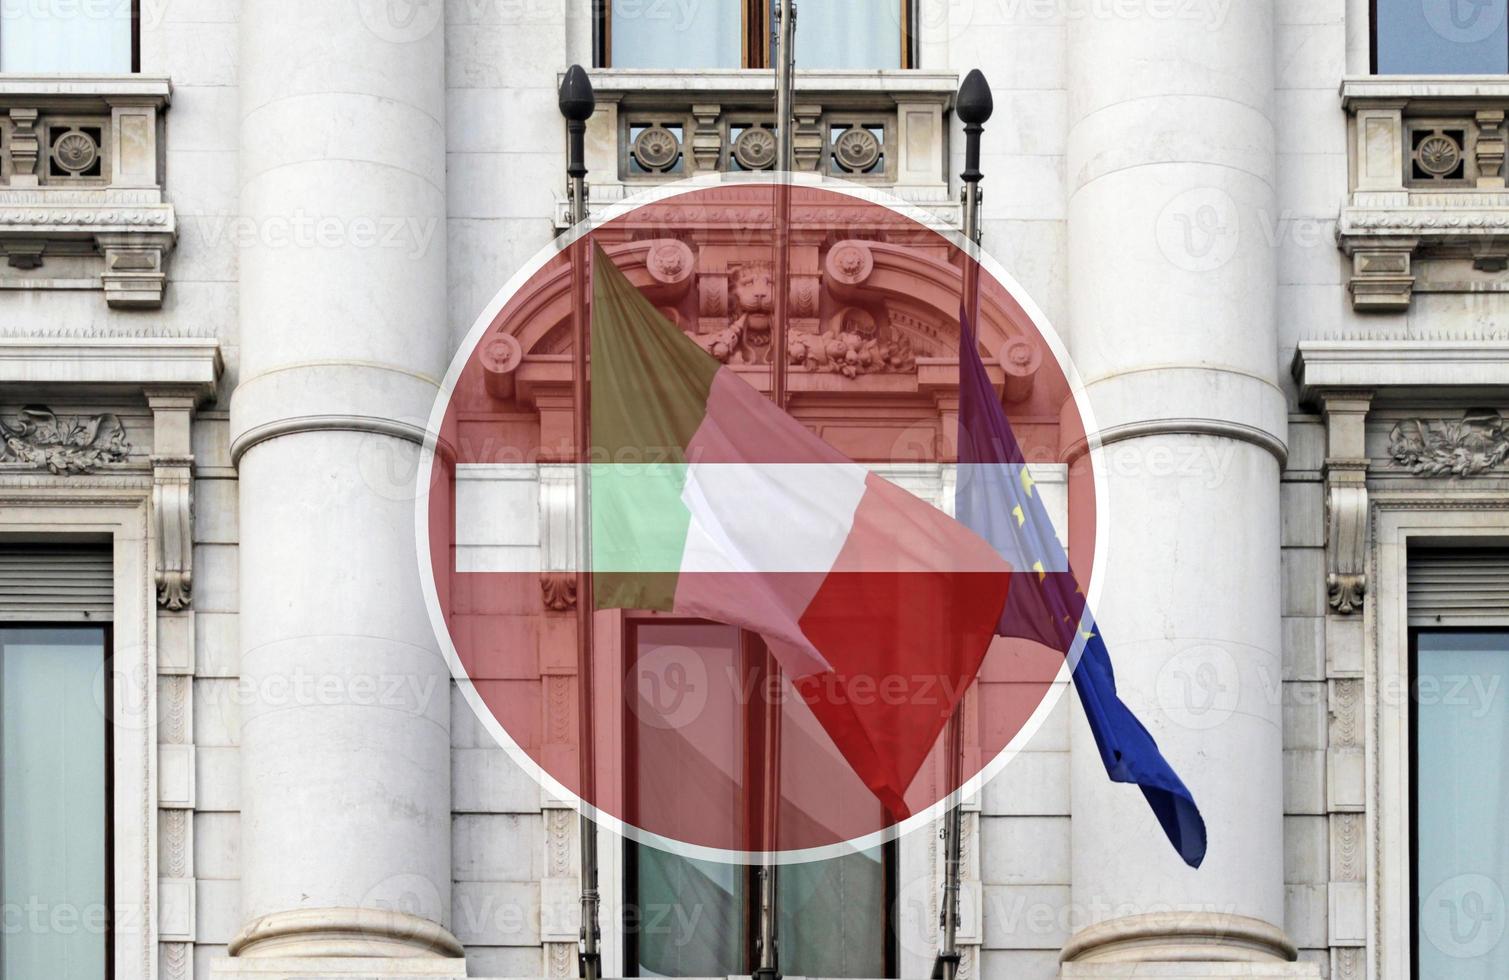 itália em confinamento - bandeira nacional italiana e bandeira da ue e nenhum sinal de entrada sobreposto a ela foto